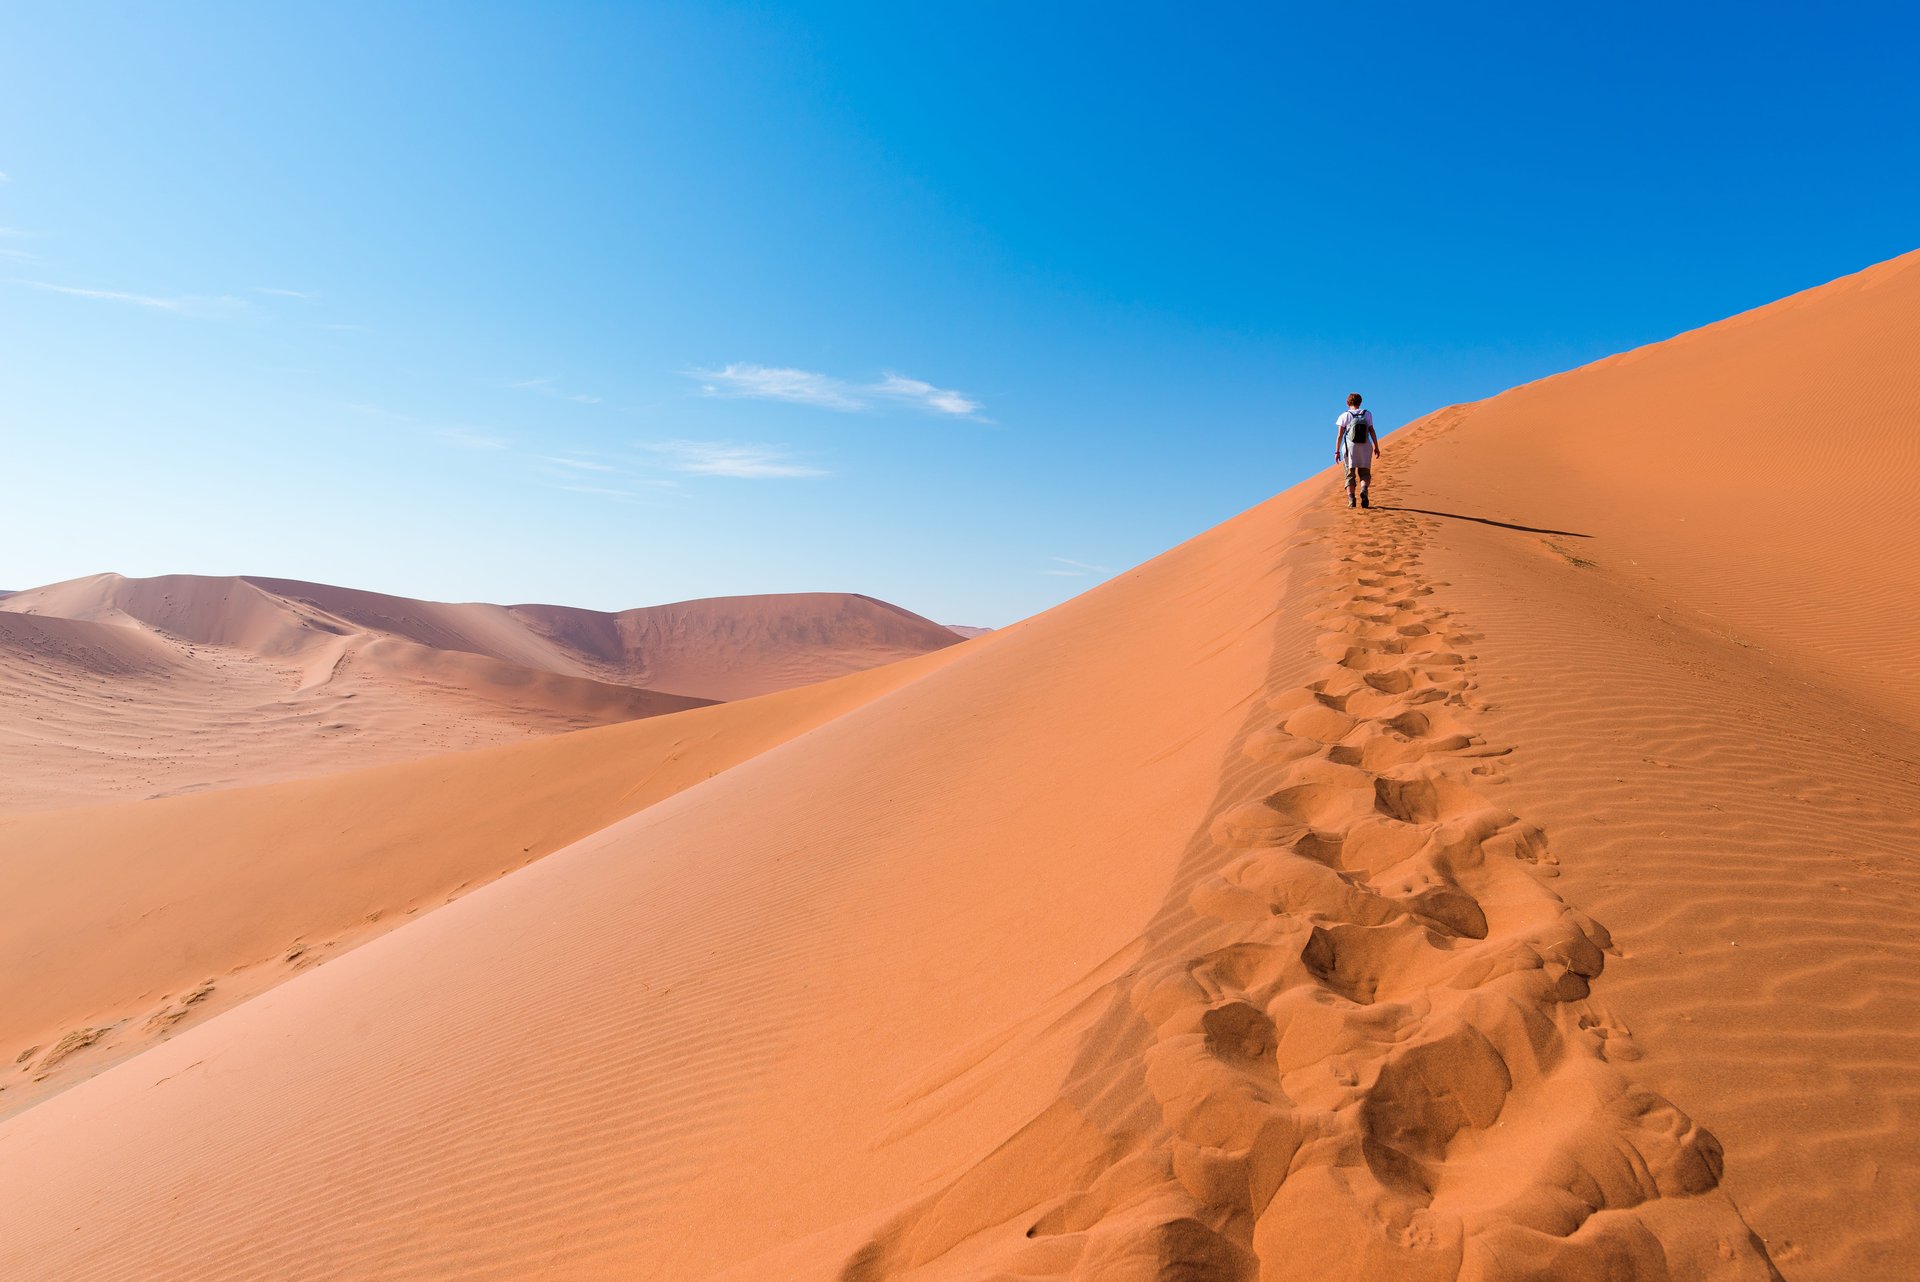 Désert de Namib ciel bleu touriste marche